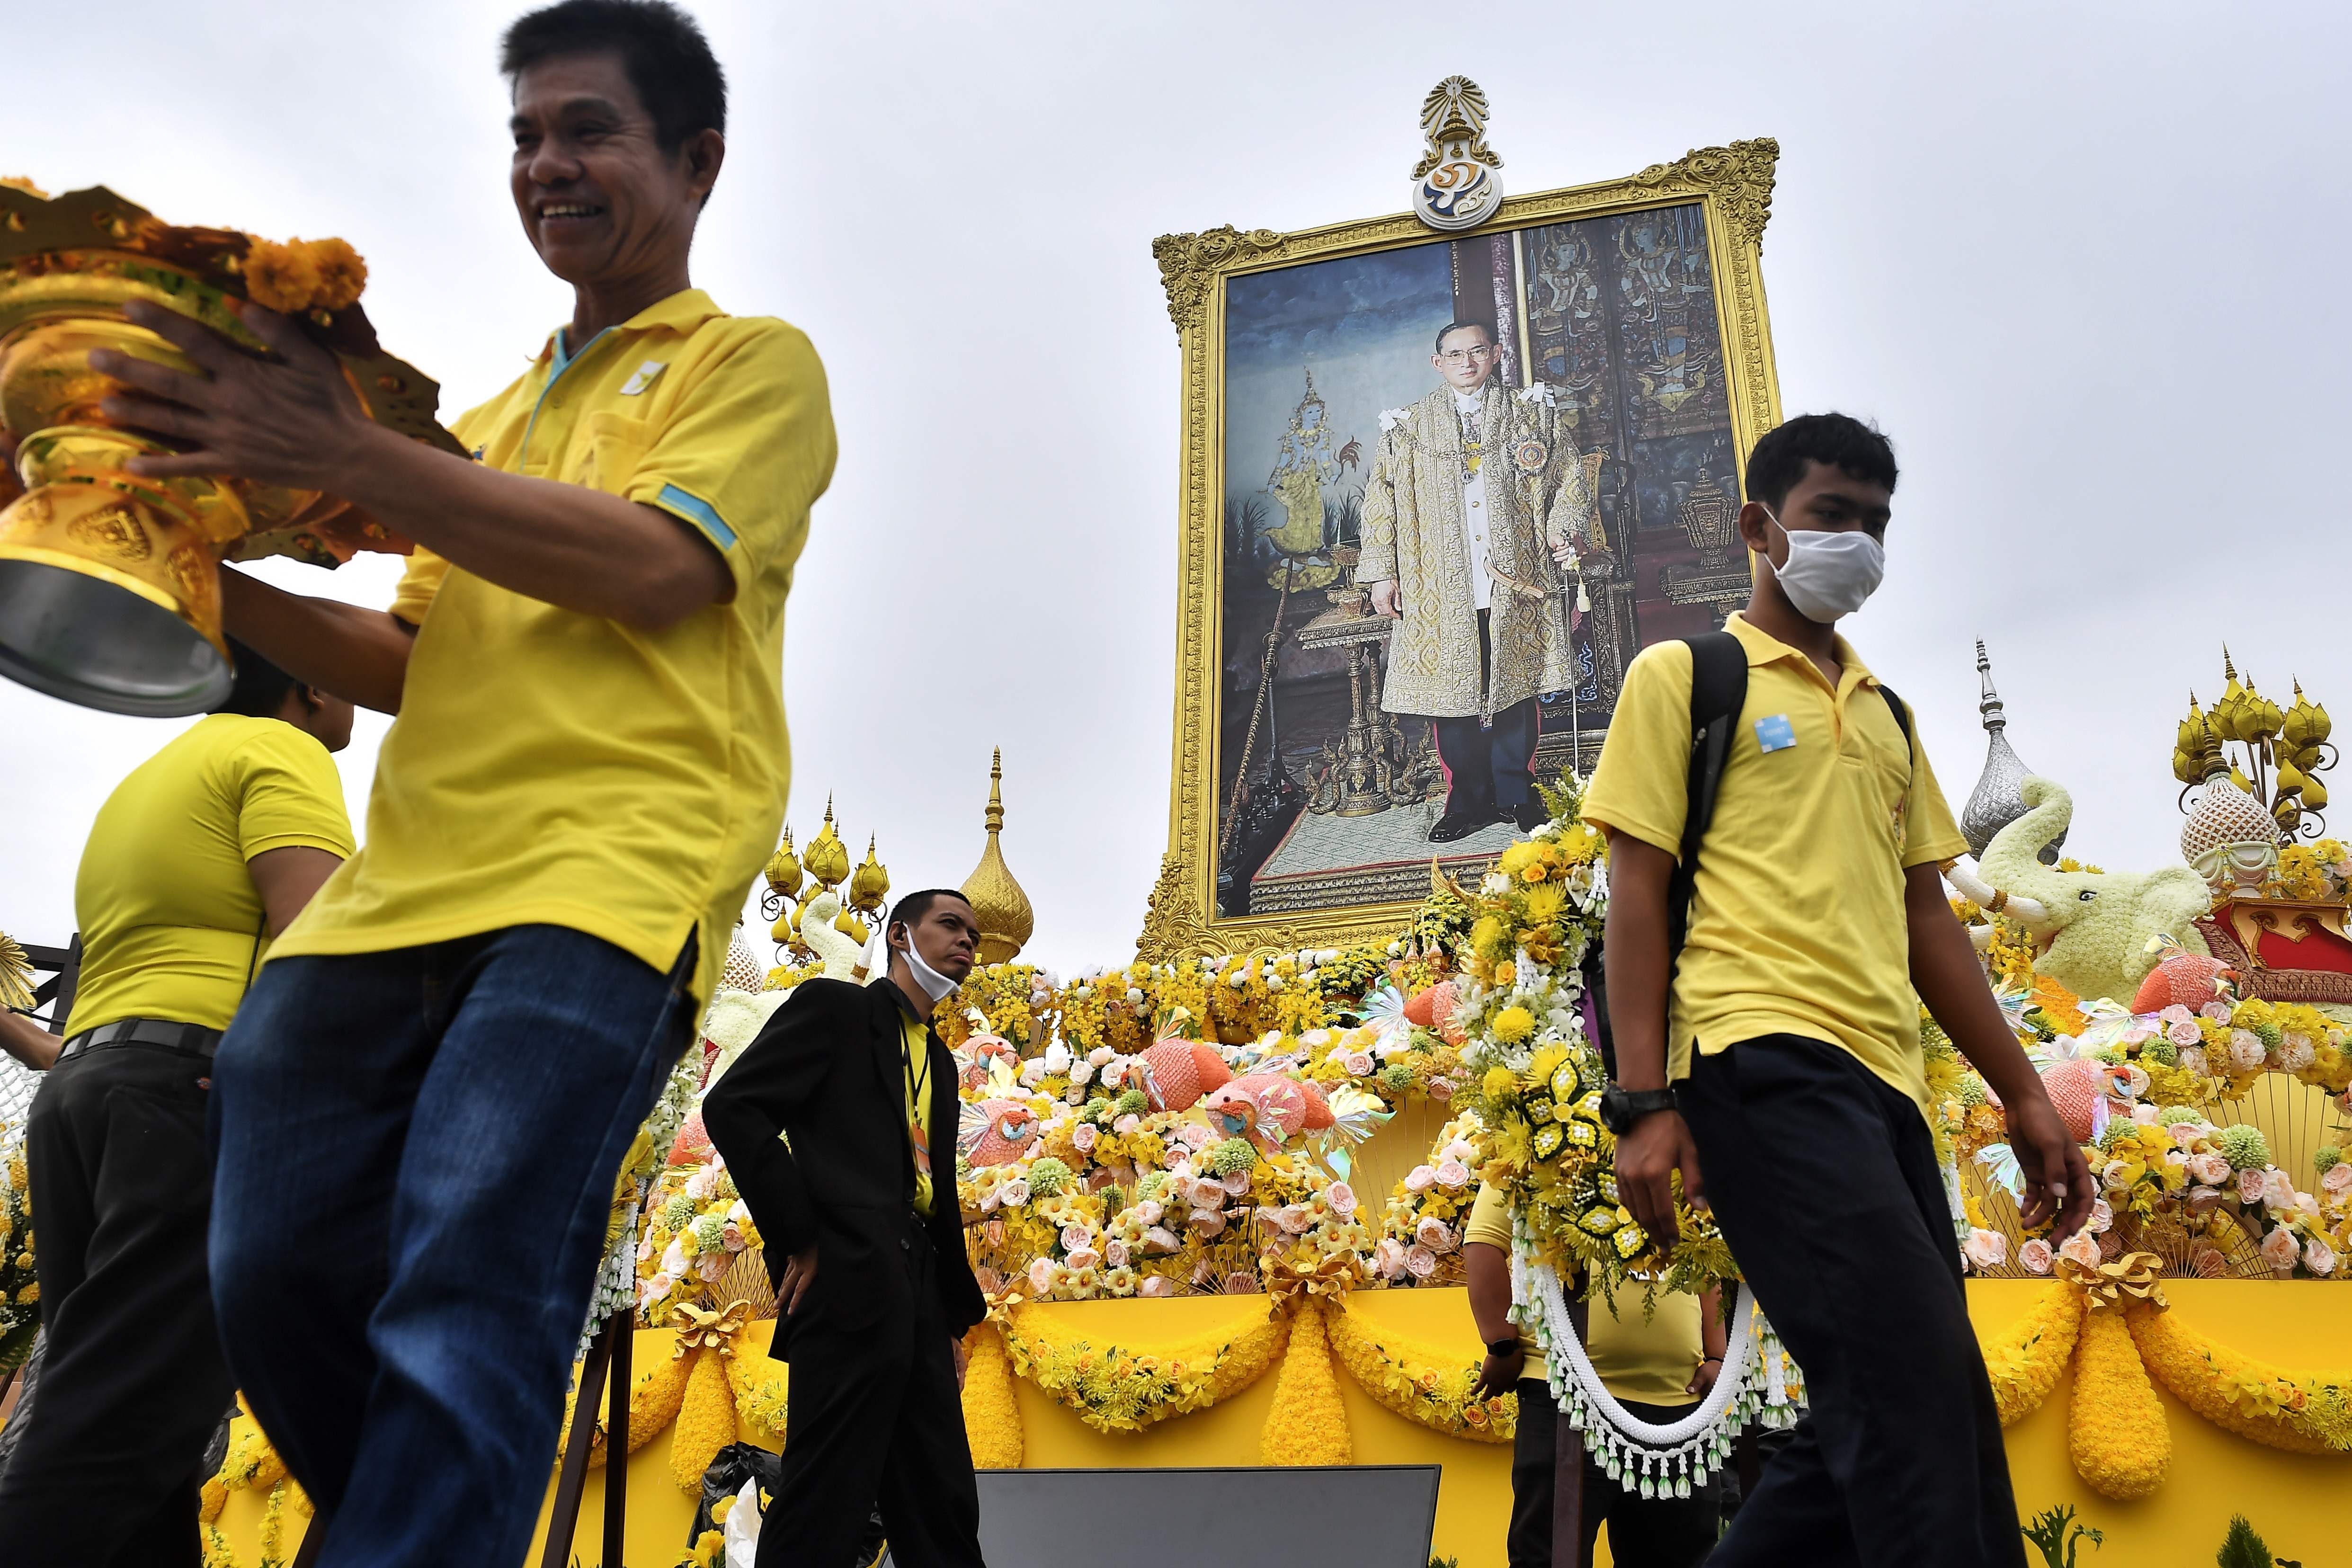 民众在广场举行宗教仪式敬献花牌。全国民民众纷穿起黄衣，表达对先王的敬重、缅怀之情。